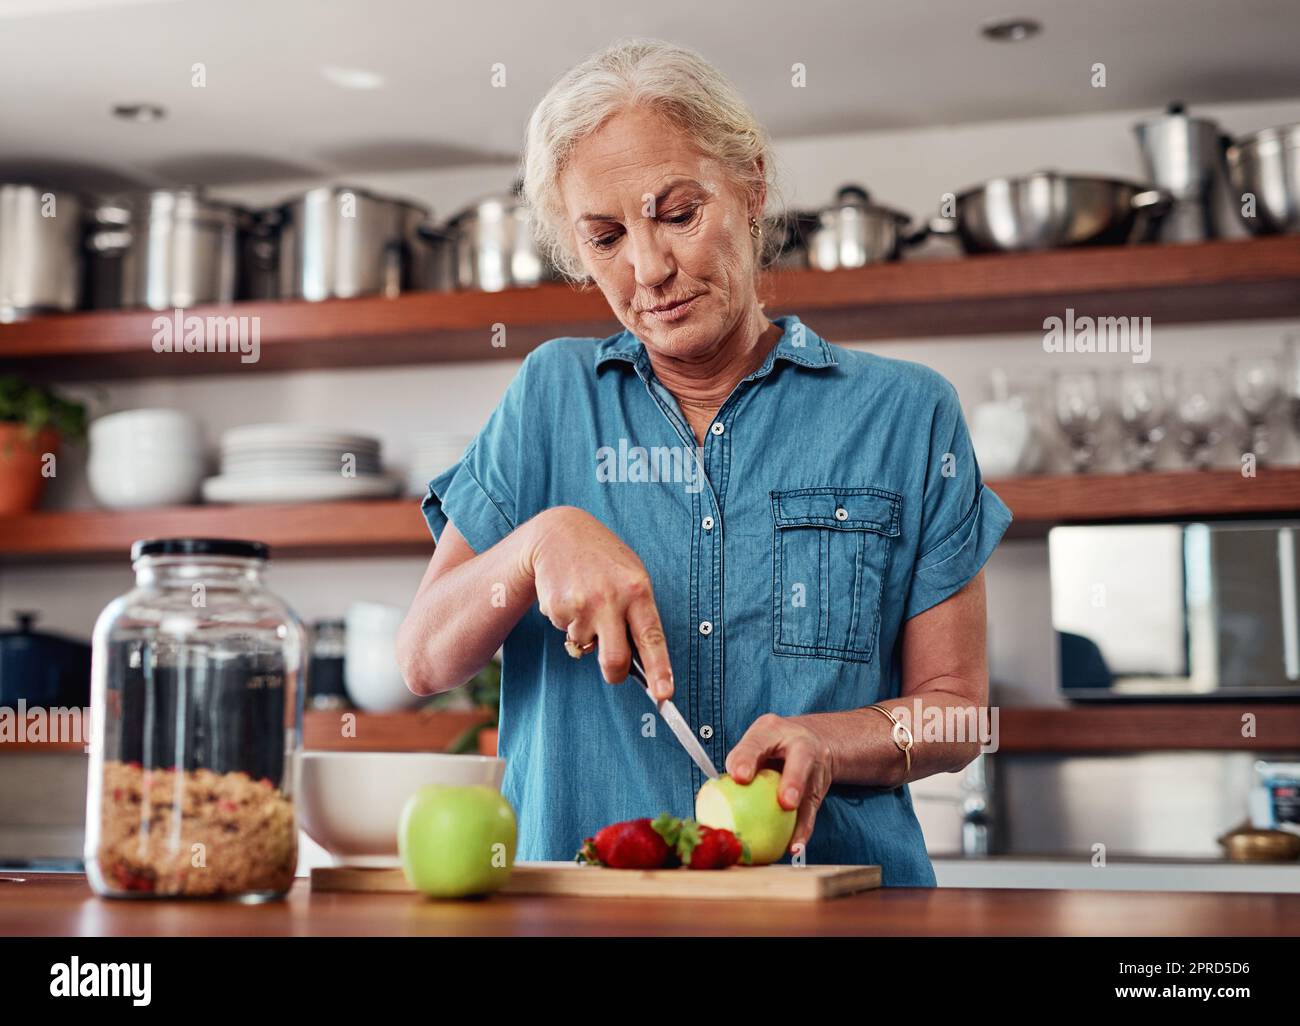 Heute isst sie nur noch gesund. Eine attraktive ältere Frau hackt Äpfel und andere Früchte, während sie das Frühstück in der Küche zubereitet. Stockfoto